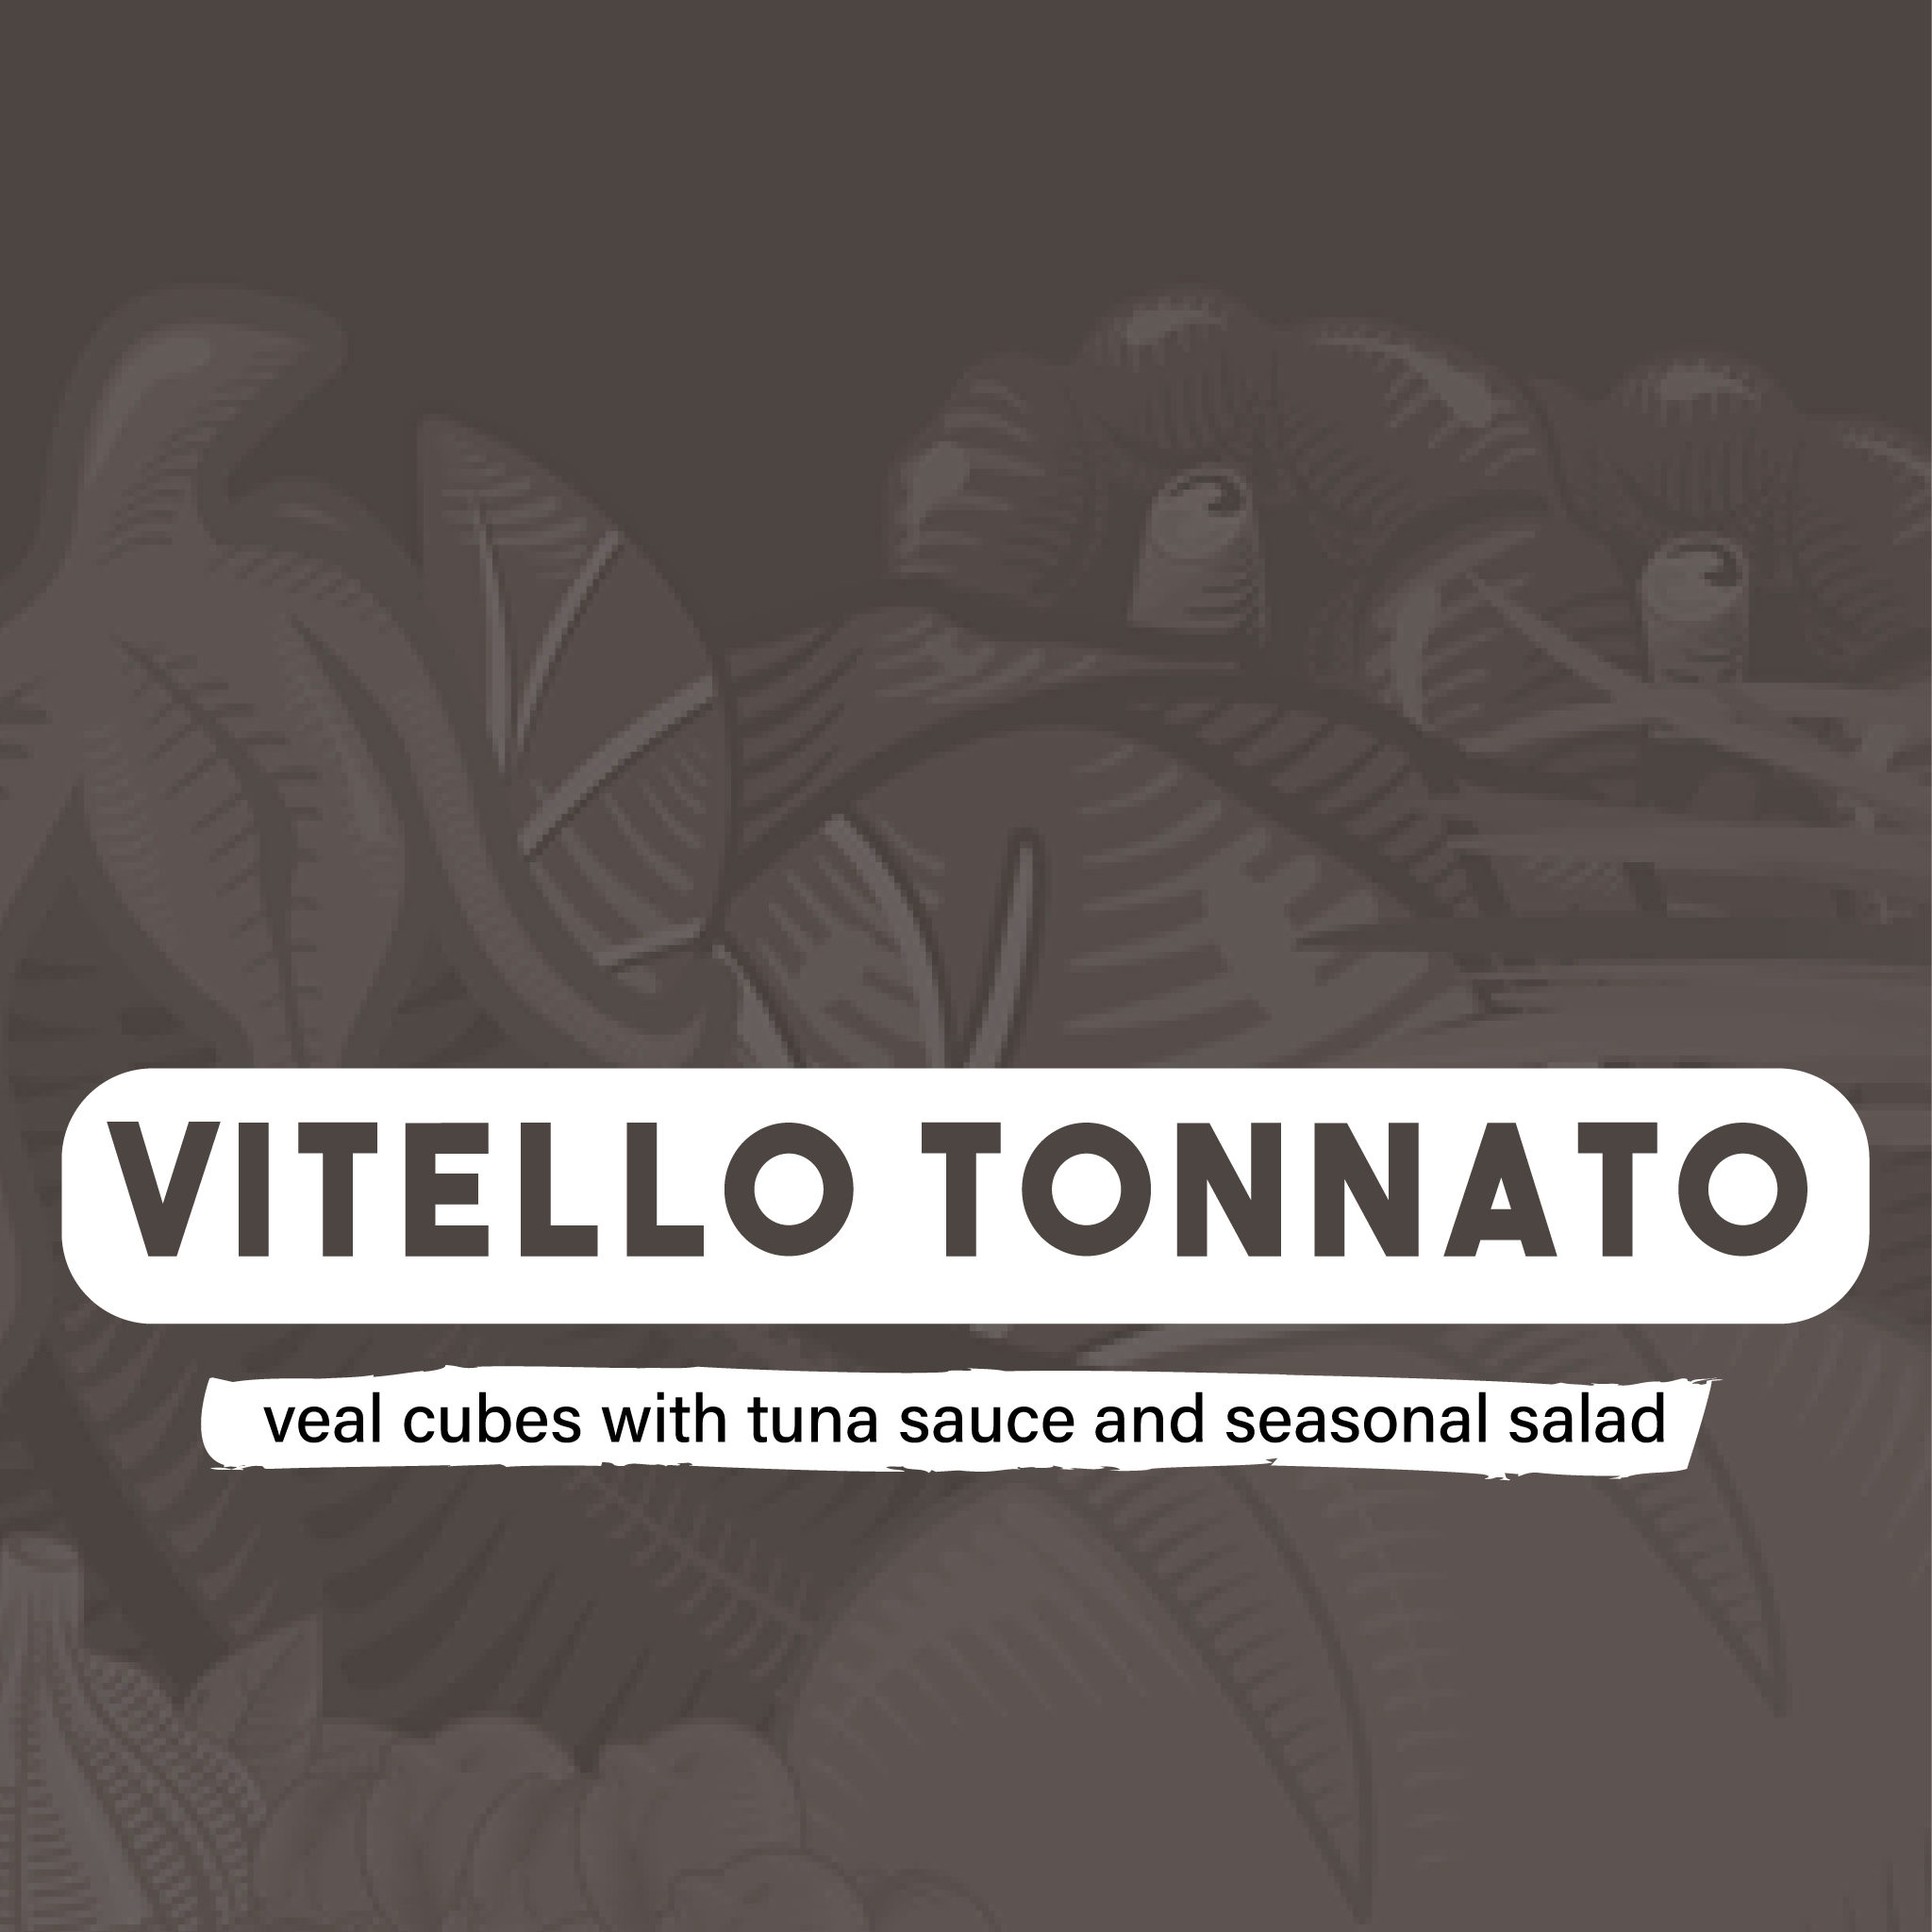 Vitello tonnato with seasonal salad